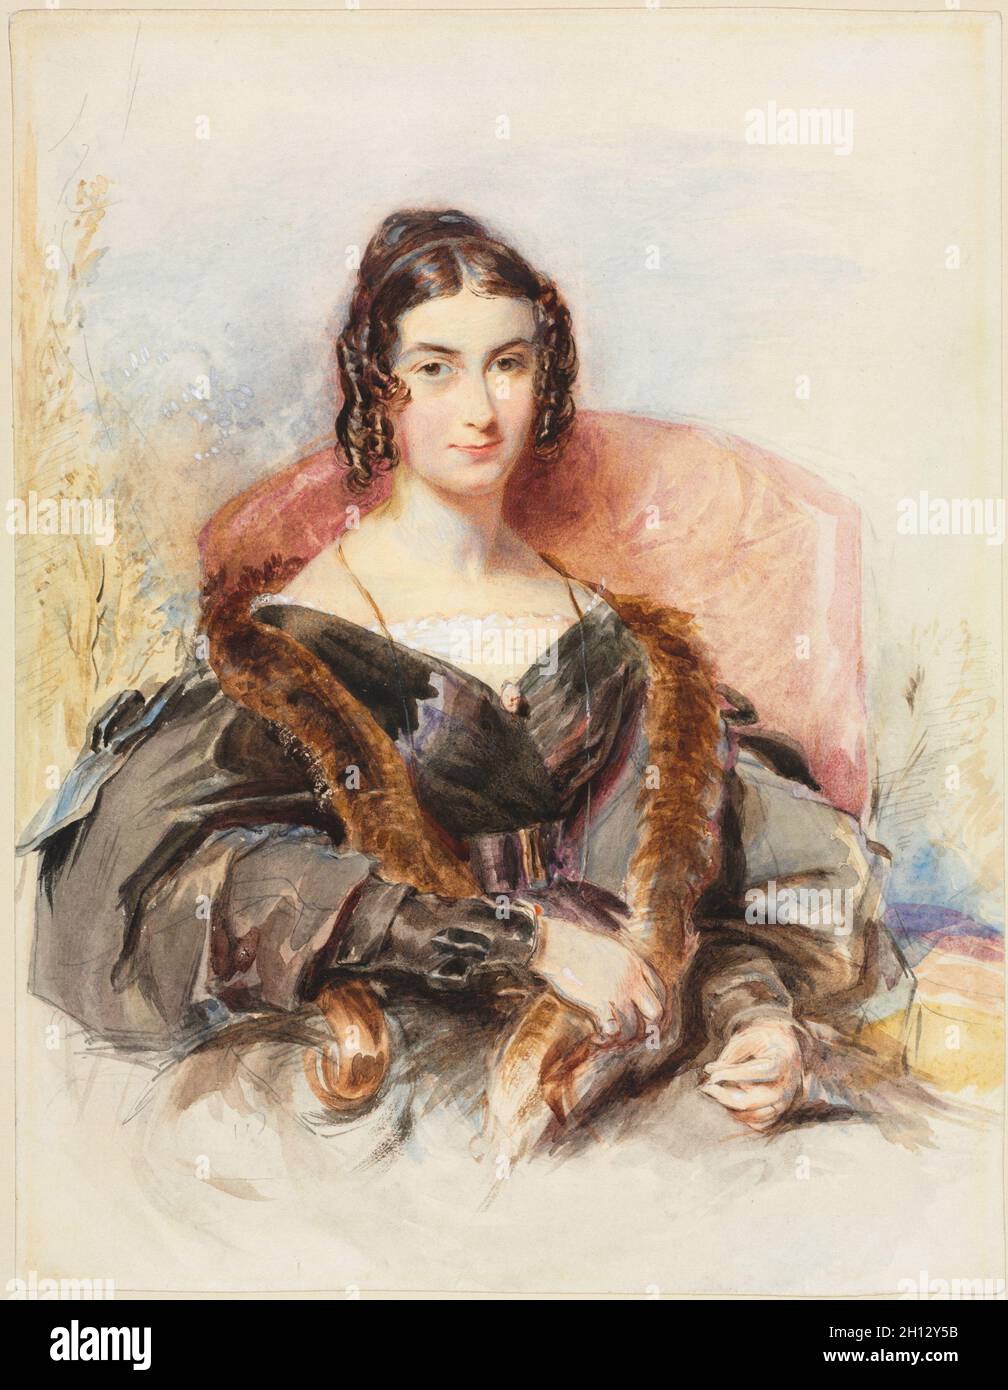 Porträt einer Frau, C. 1830-1835. George Richmond (British, 1809-1896). Aquarell mit Graphit mit weißer Farbe erhöht; Blatt: 27,8 x 21,6 cm (10 15/16 x 8 1/2 in.). Stockfoto